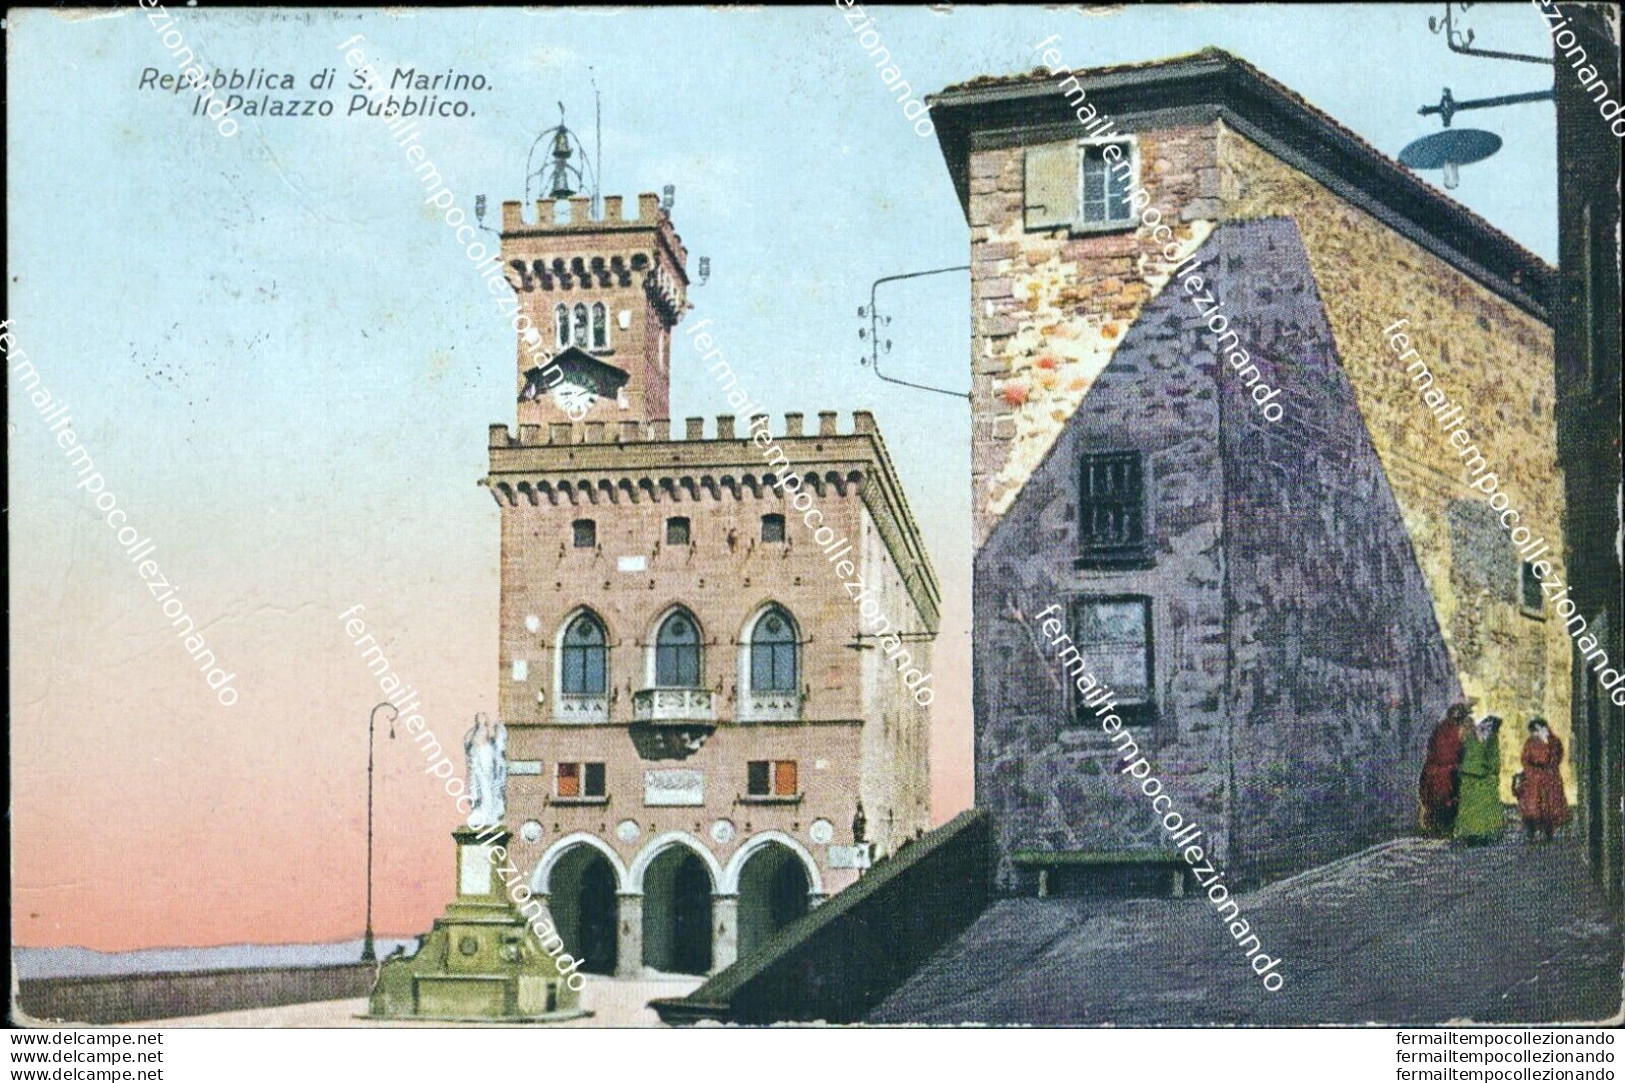 Bc315 Cartolina Repubblica Di San Marino Il Palazzo Pubblico - San Marino